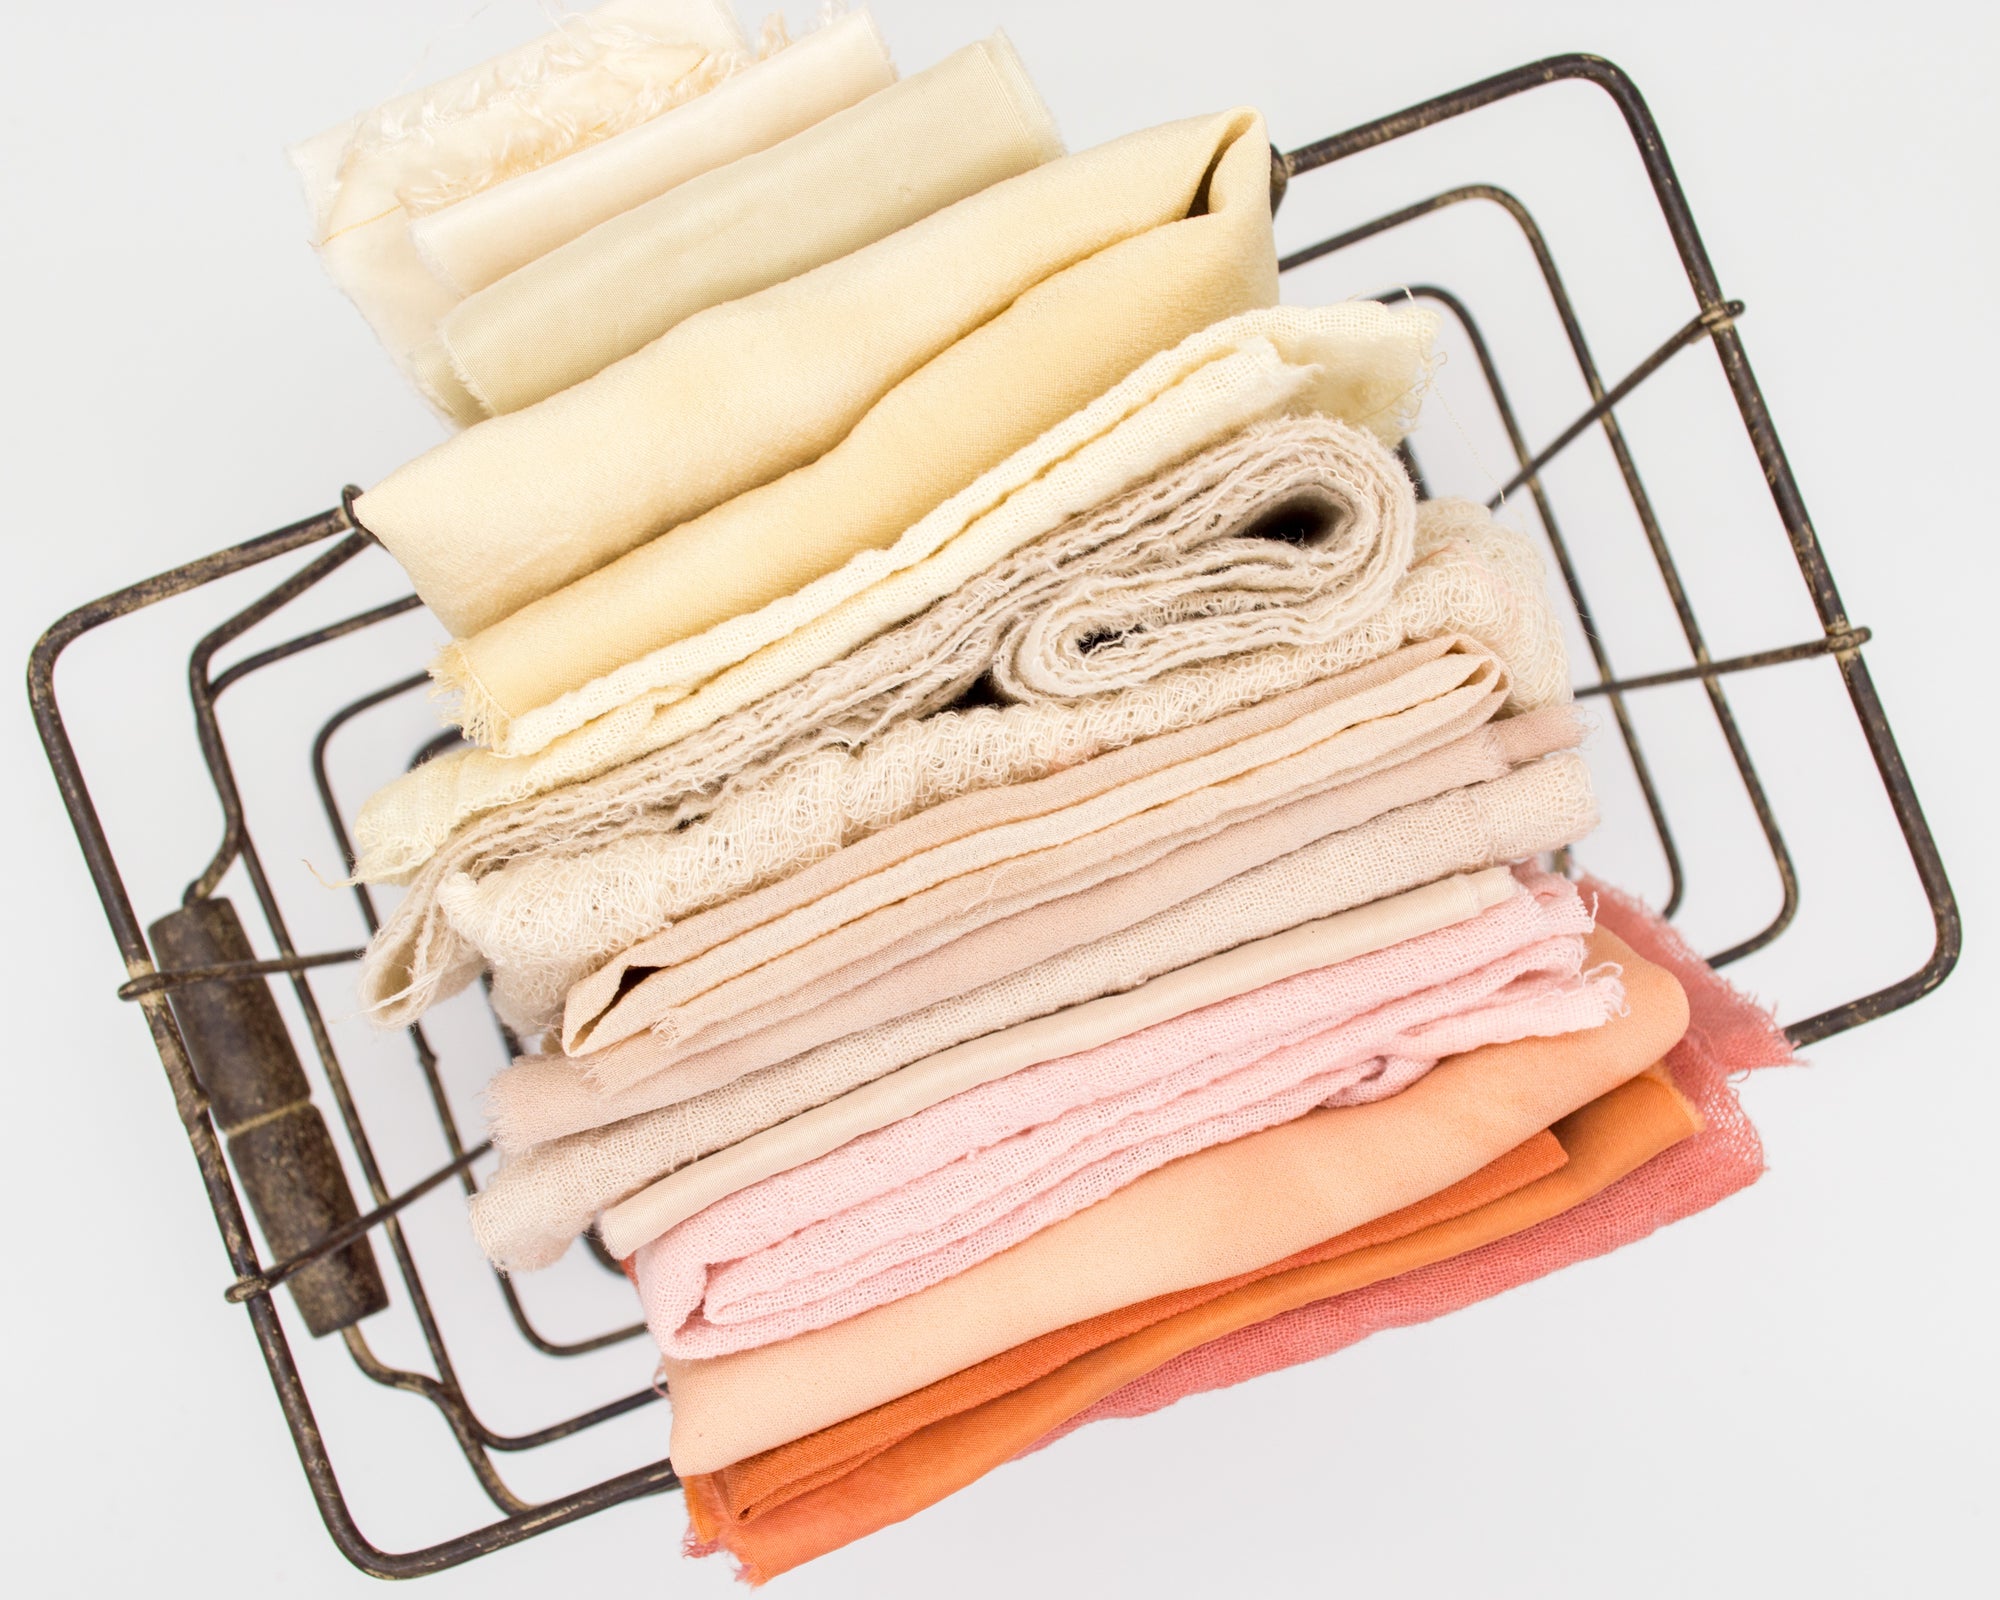 Best Methods For Storing Blankets & Linens